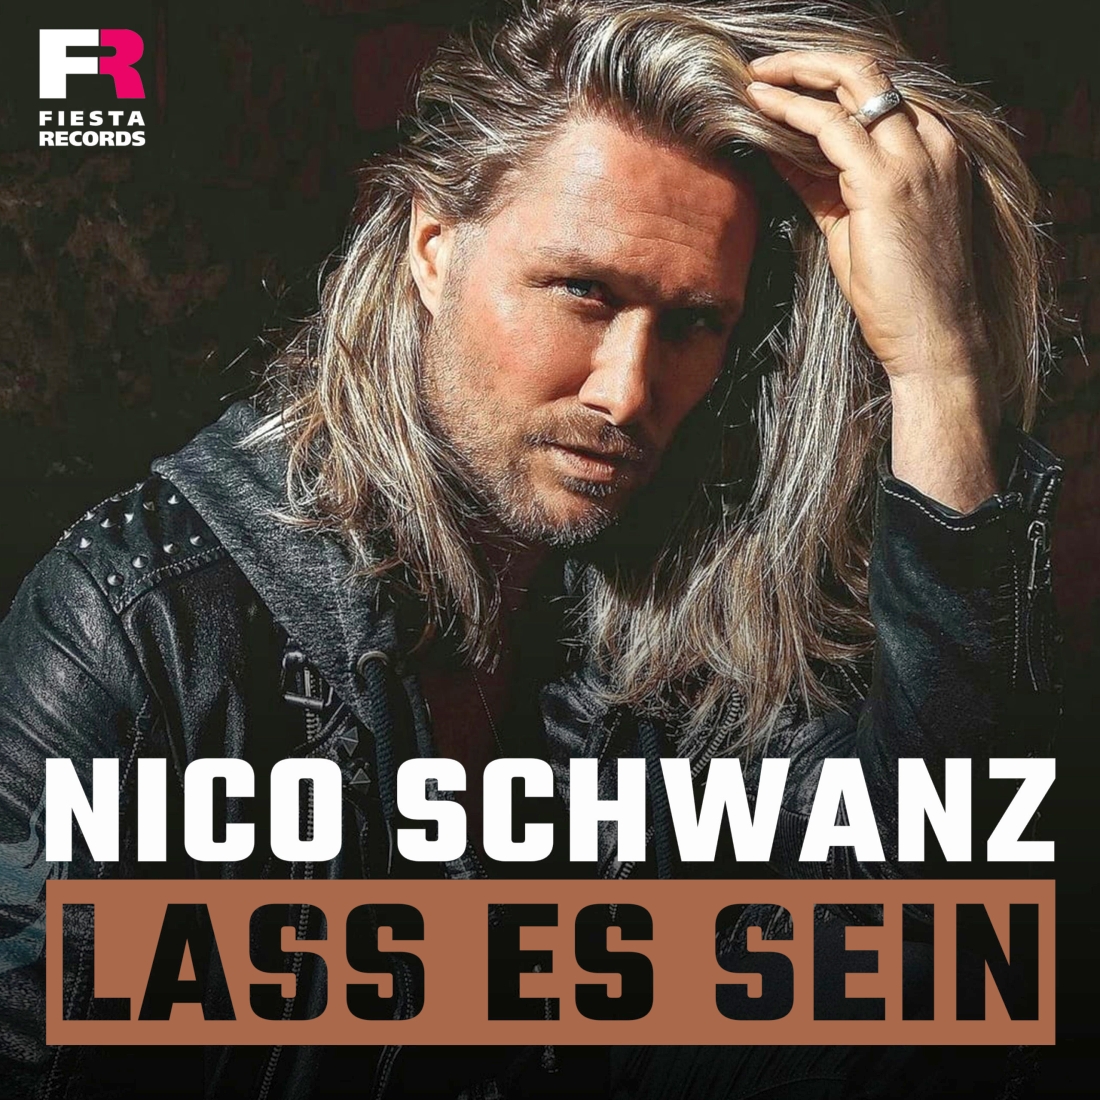 Nico Schwanz - Lass es sein (Fiesta Records)